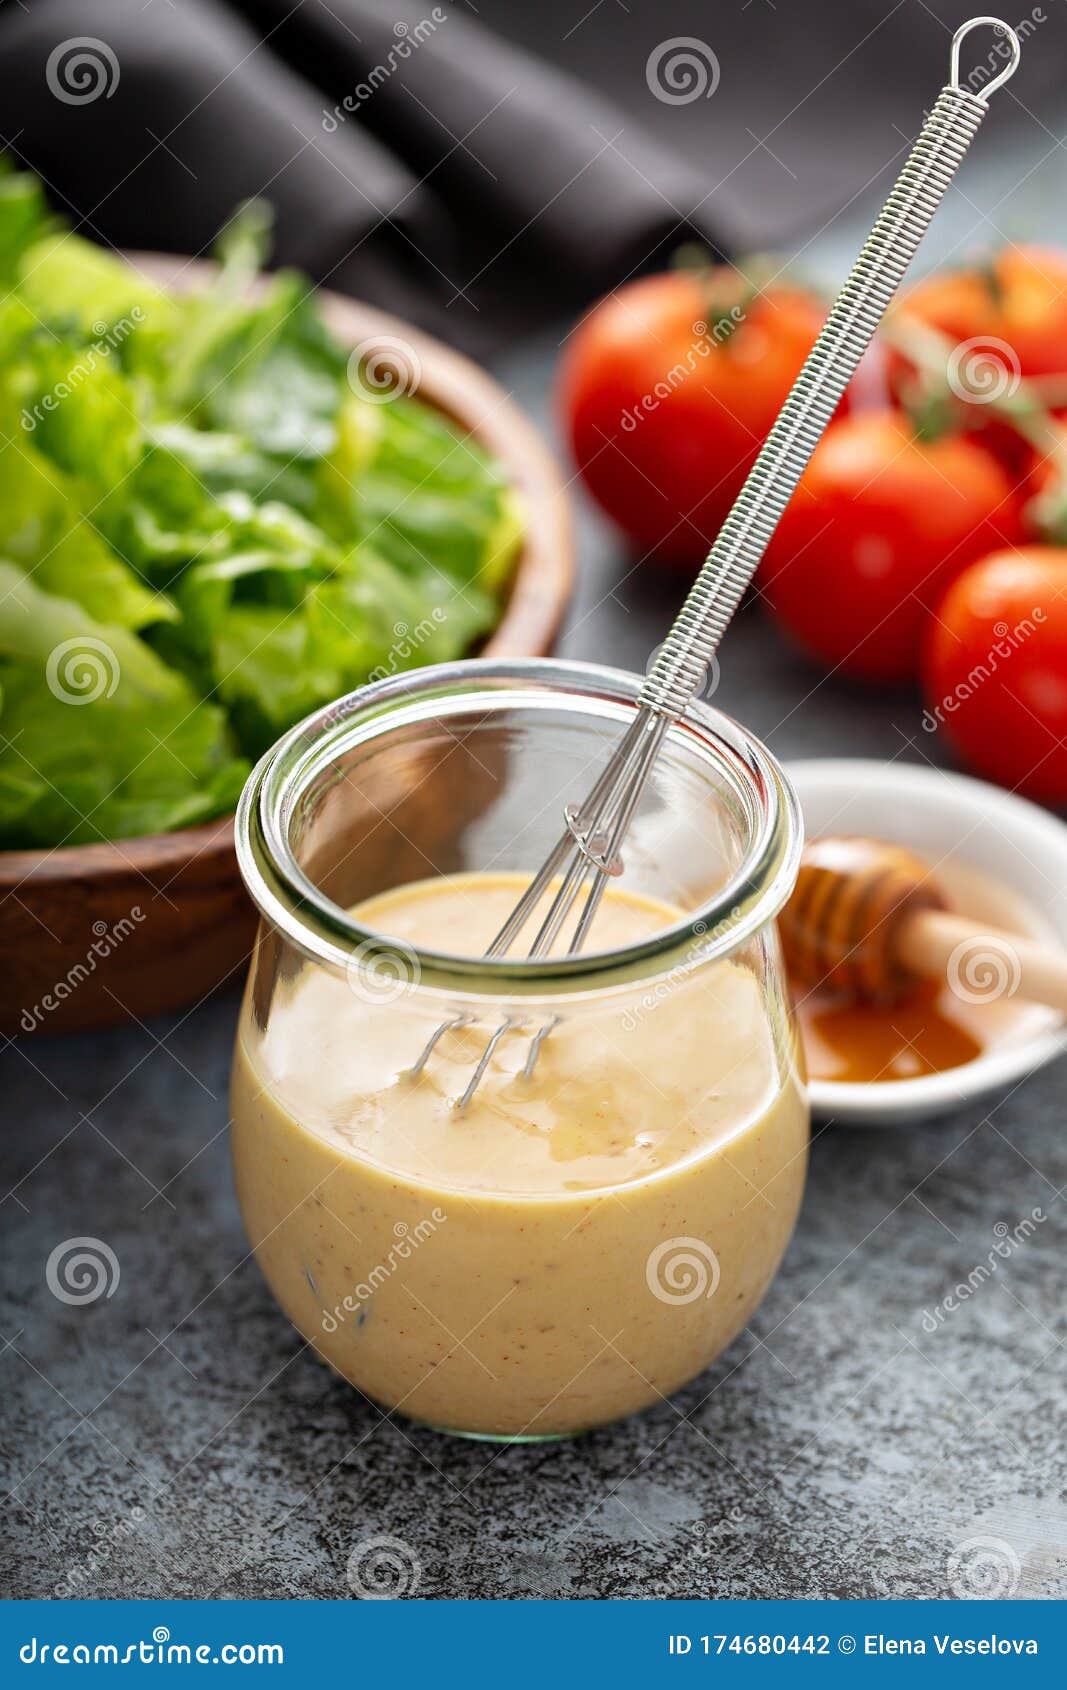 homemade honey mustard sauce in a glass jar